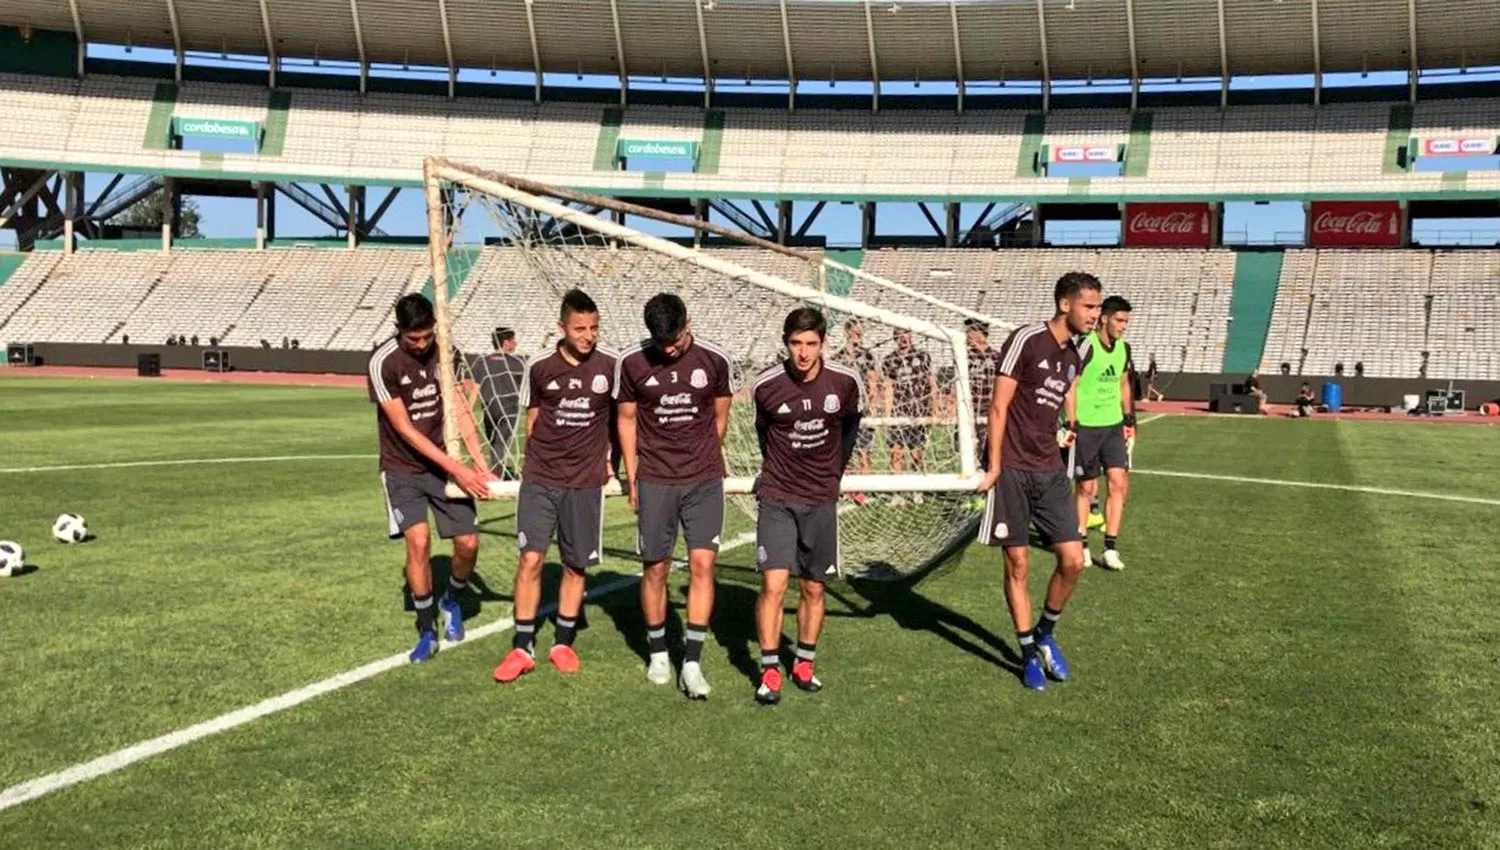 La selección mexicana hizo el reconocimiento del campo de juego en el estadio Mario Alberto Kempes. FOTO TOMADA DE TWITTER @miseleccionmx